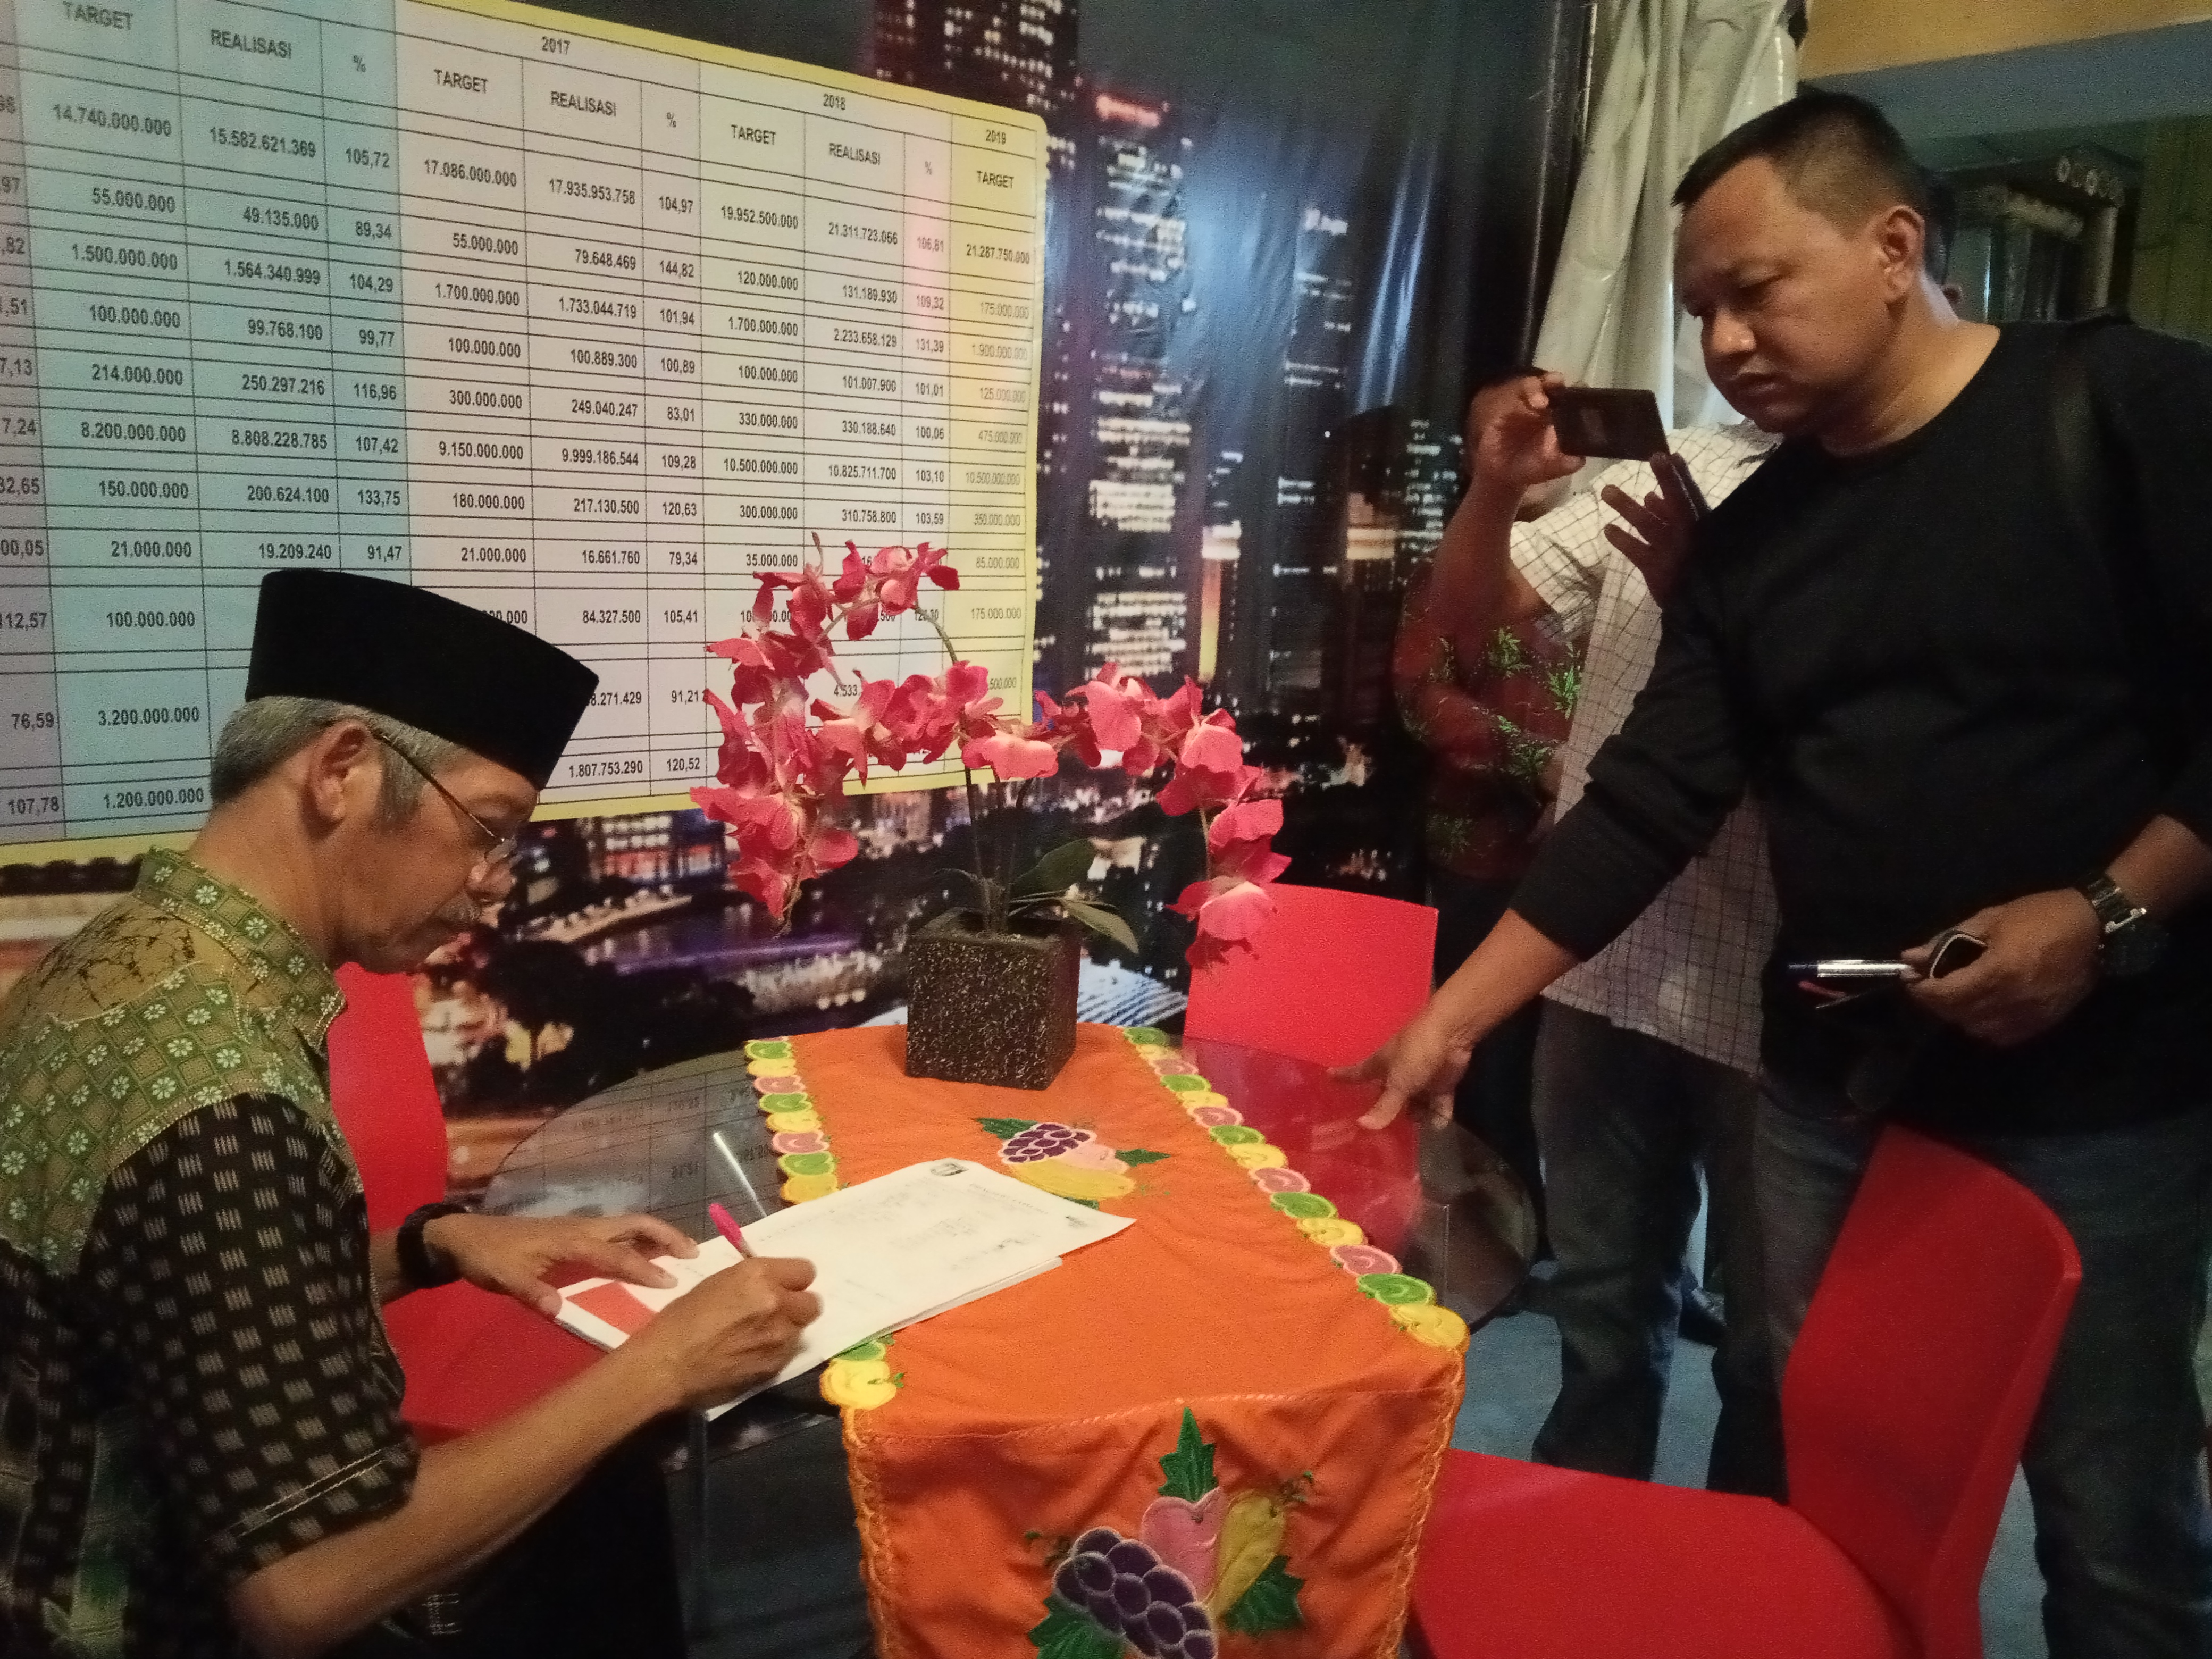 Bupati Pringsewu H Sujadi saat menuliskan catatan khusus di buku tamu di stand Bapenda